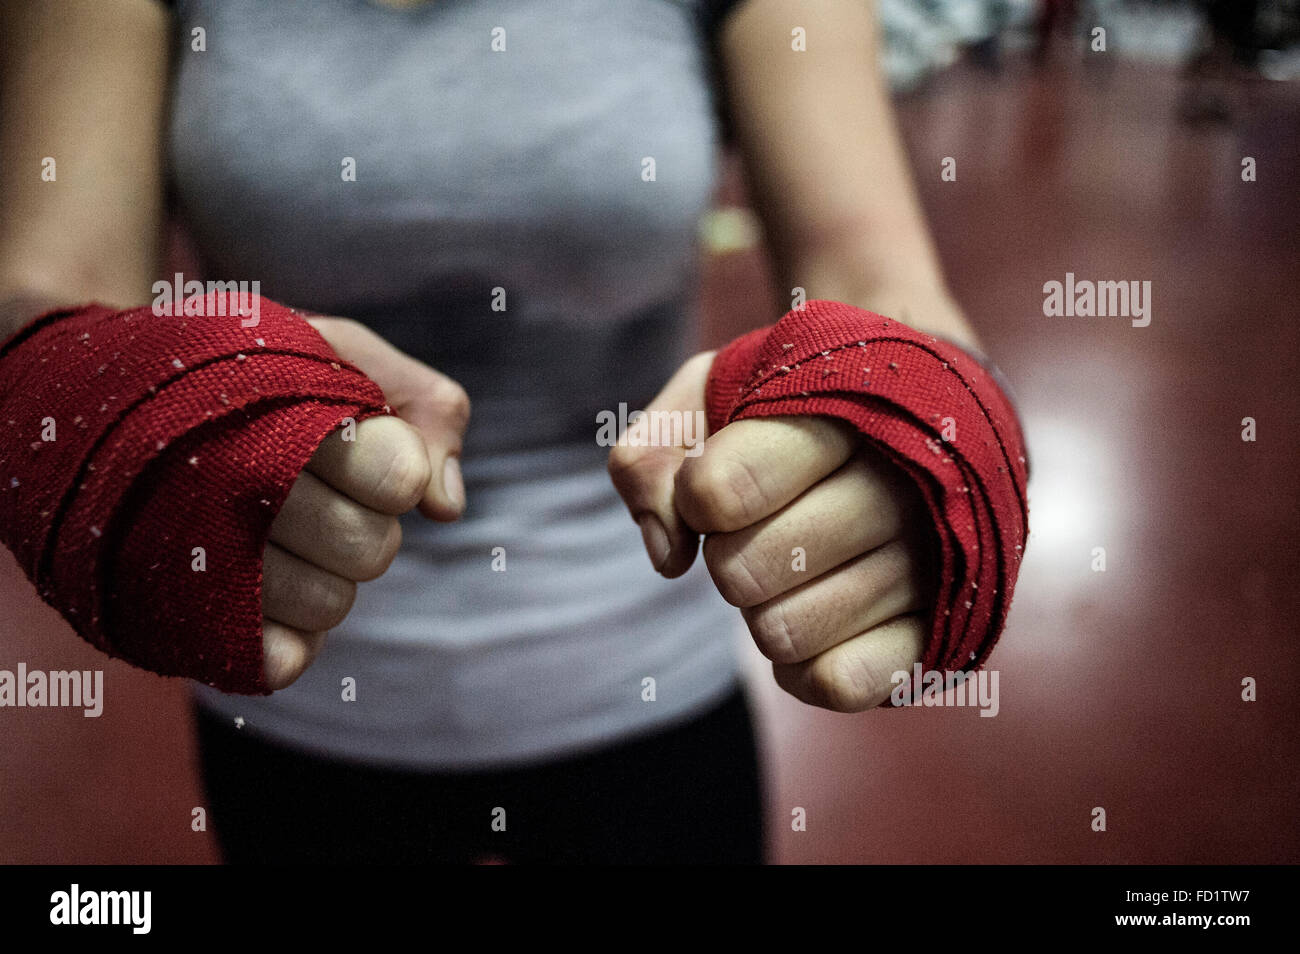 Detalle de las manos de la boxeadora Fatima Marti,con las proteciones durante un entrenamiento en su club de boxeo de Elche Stock Photo